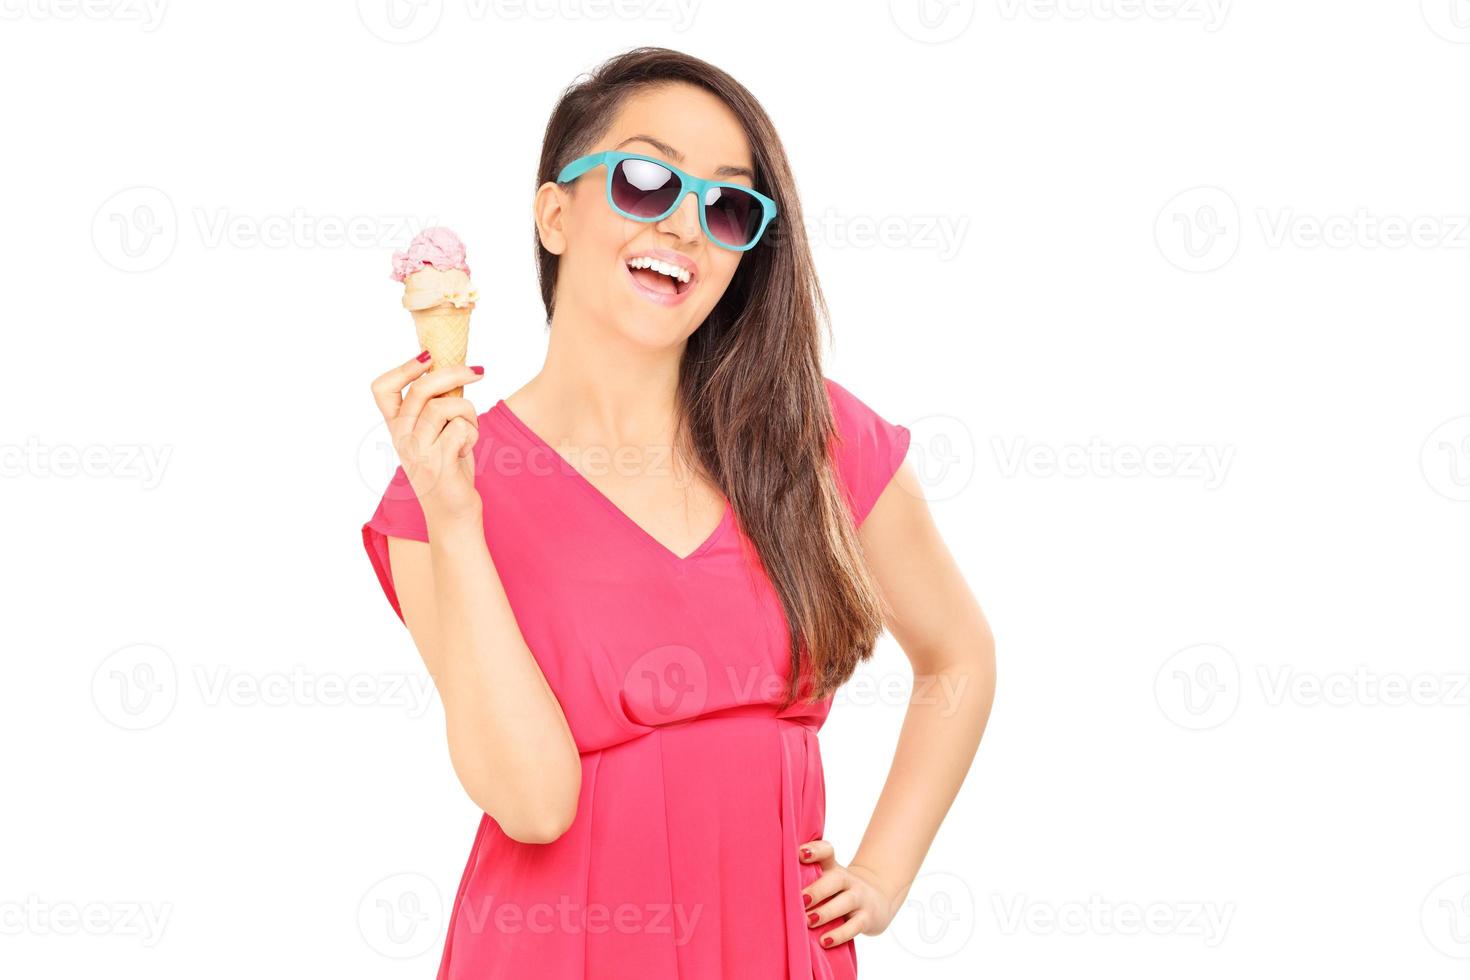 giovane donna fresca che tiene un gelato foto